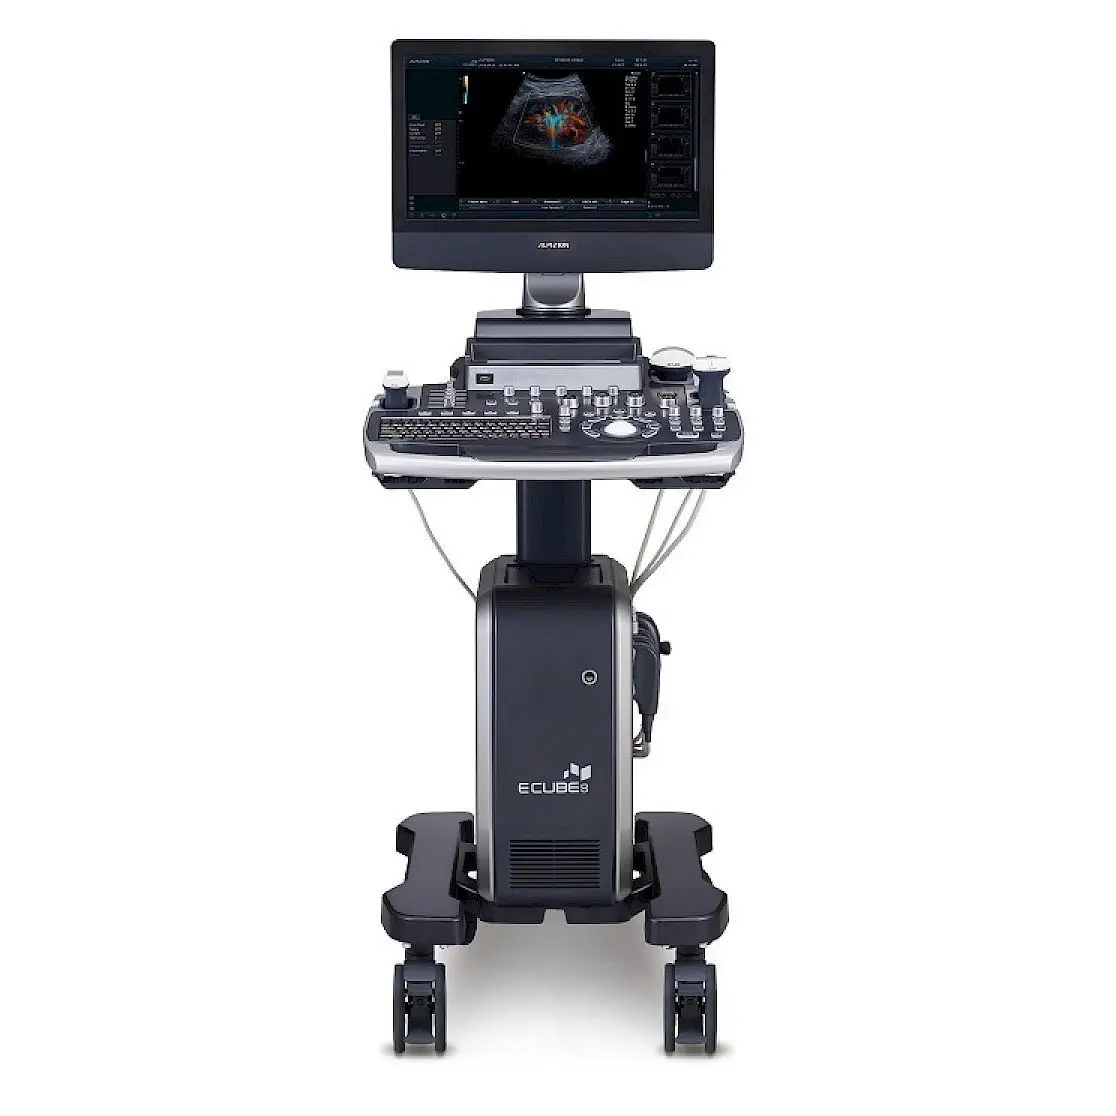 เครื่องตรวจอวัยวะภายในด้วยคลื่นเสียงความคมชัดสูง  On-platform ultrasound system E-CUBE 8 LE  Alpinion